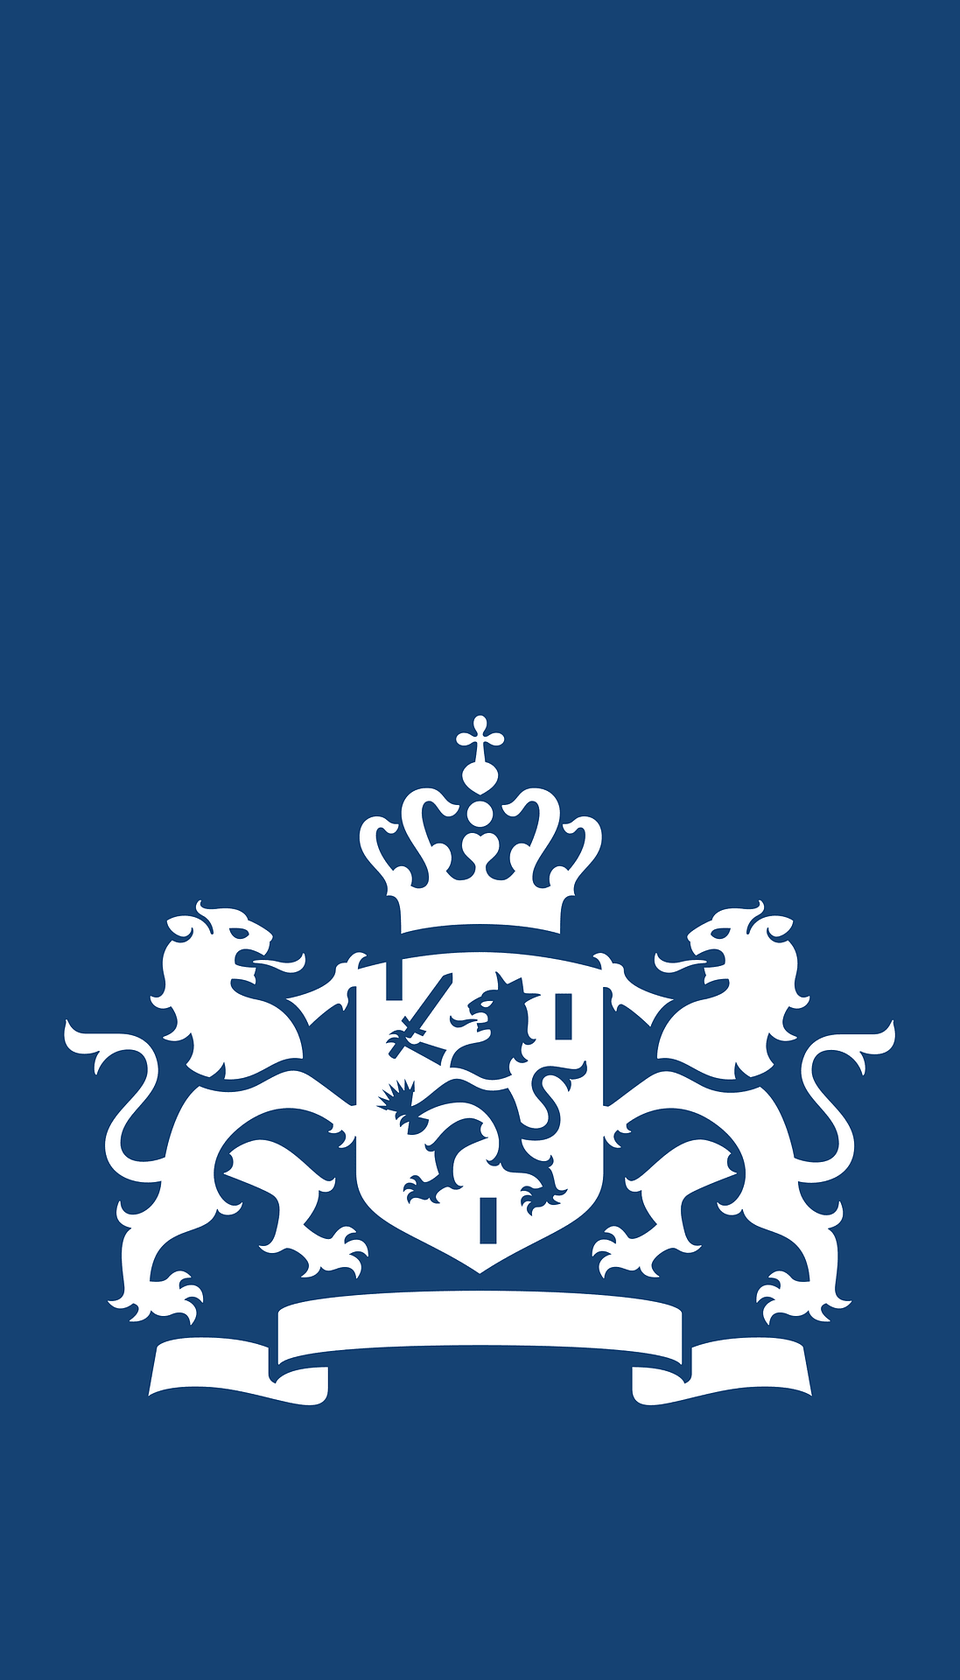 Logo Rijksoverheid Clipart, Emblem, Symbol Png Image